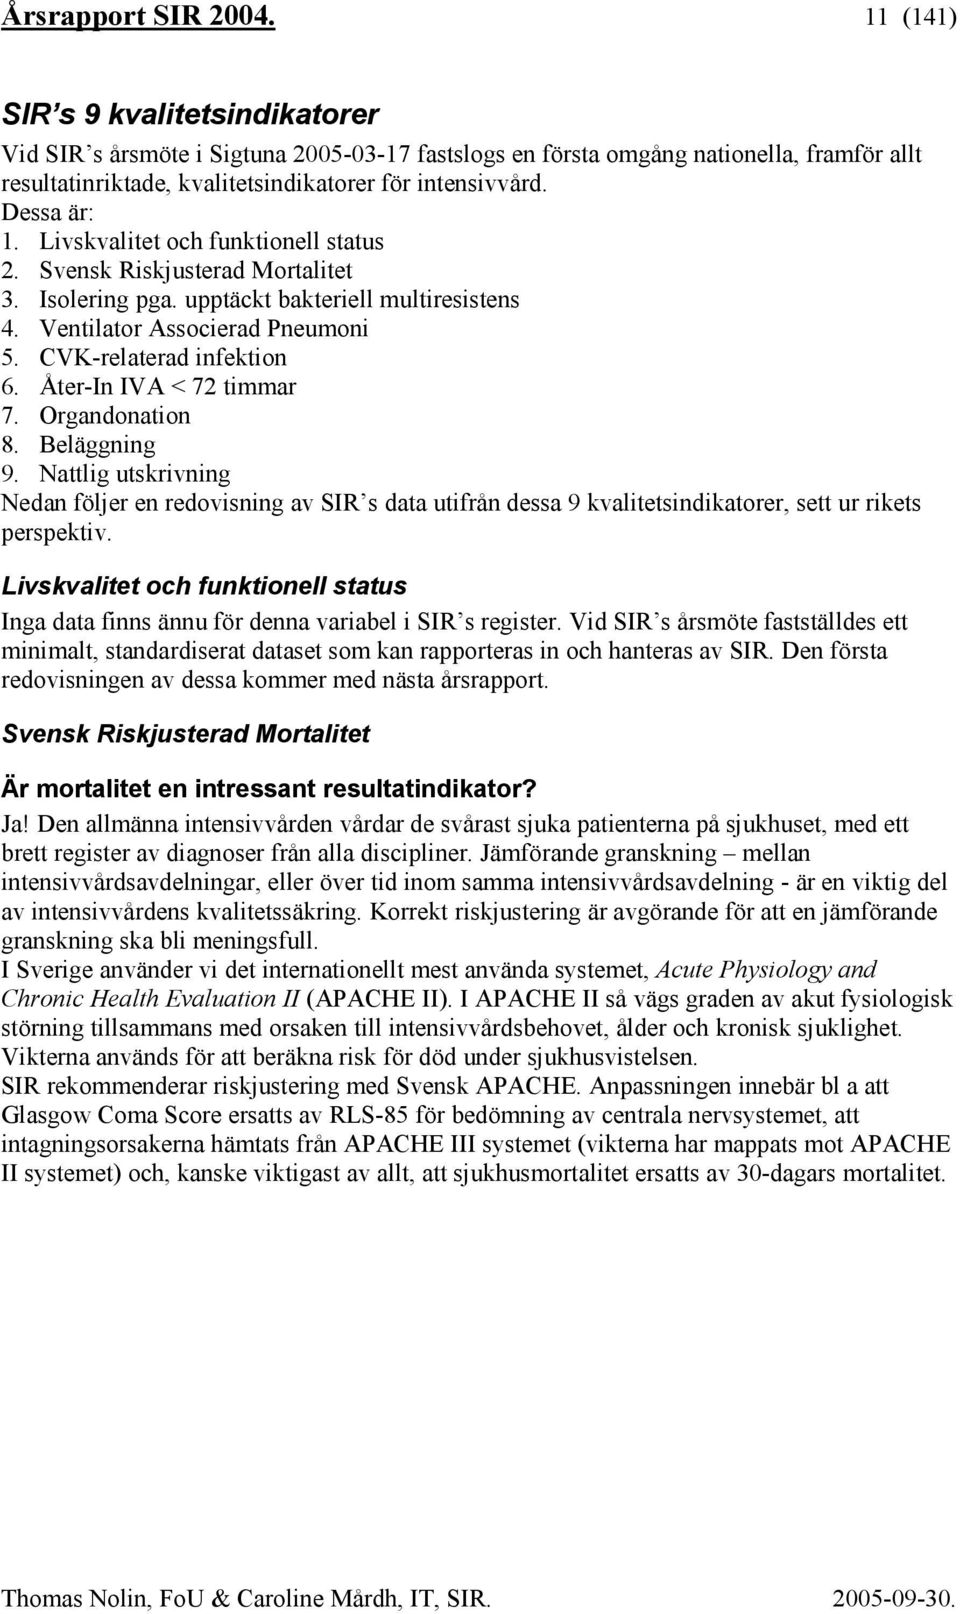 Livskvalitet och funktionell status 2. Svensk Riskjusterad Mortalitet 3. Isolering pga. upptäckt bakteriell multiresistens 4. Ventilator Associerad Pneumoni 5. CVK-relaterad infektion 6.